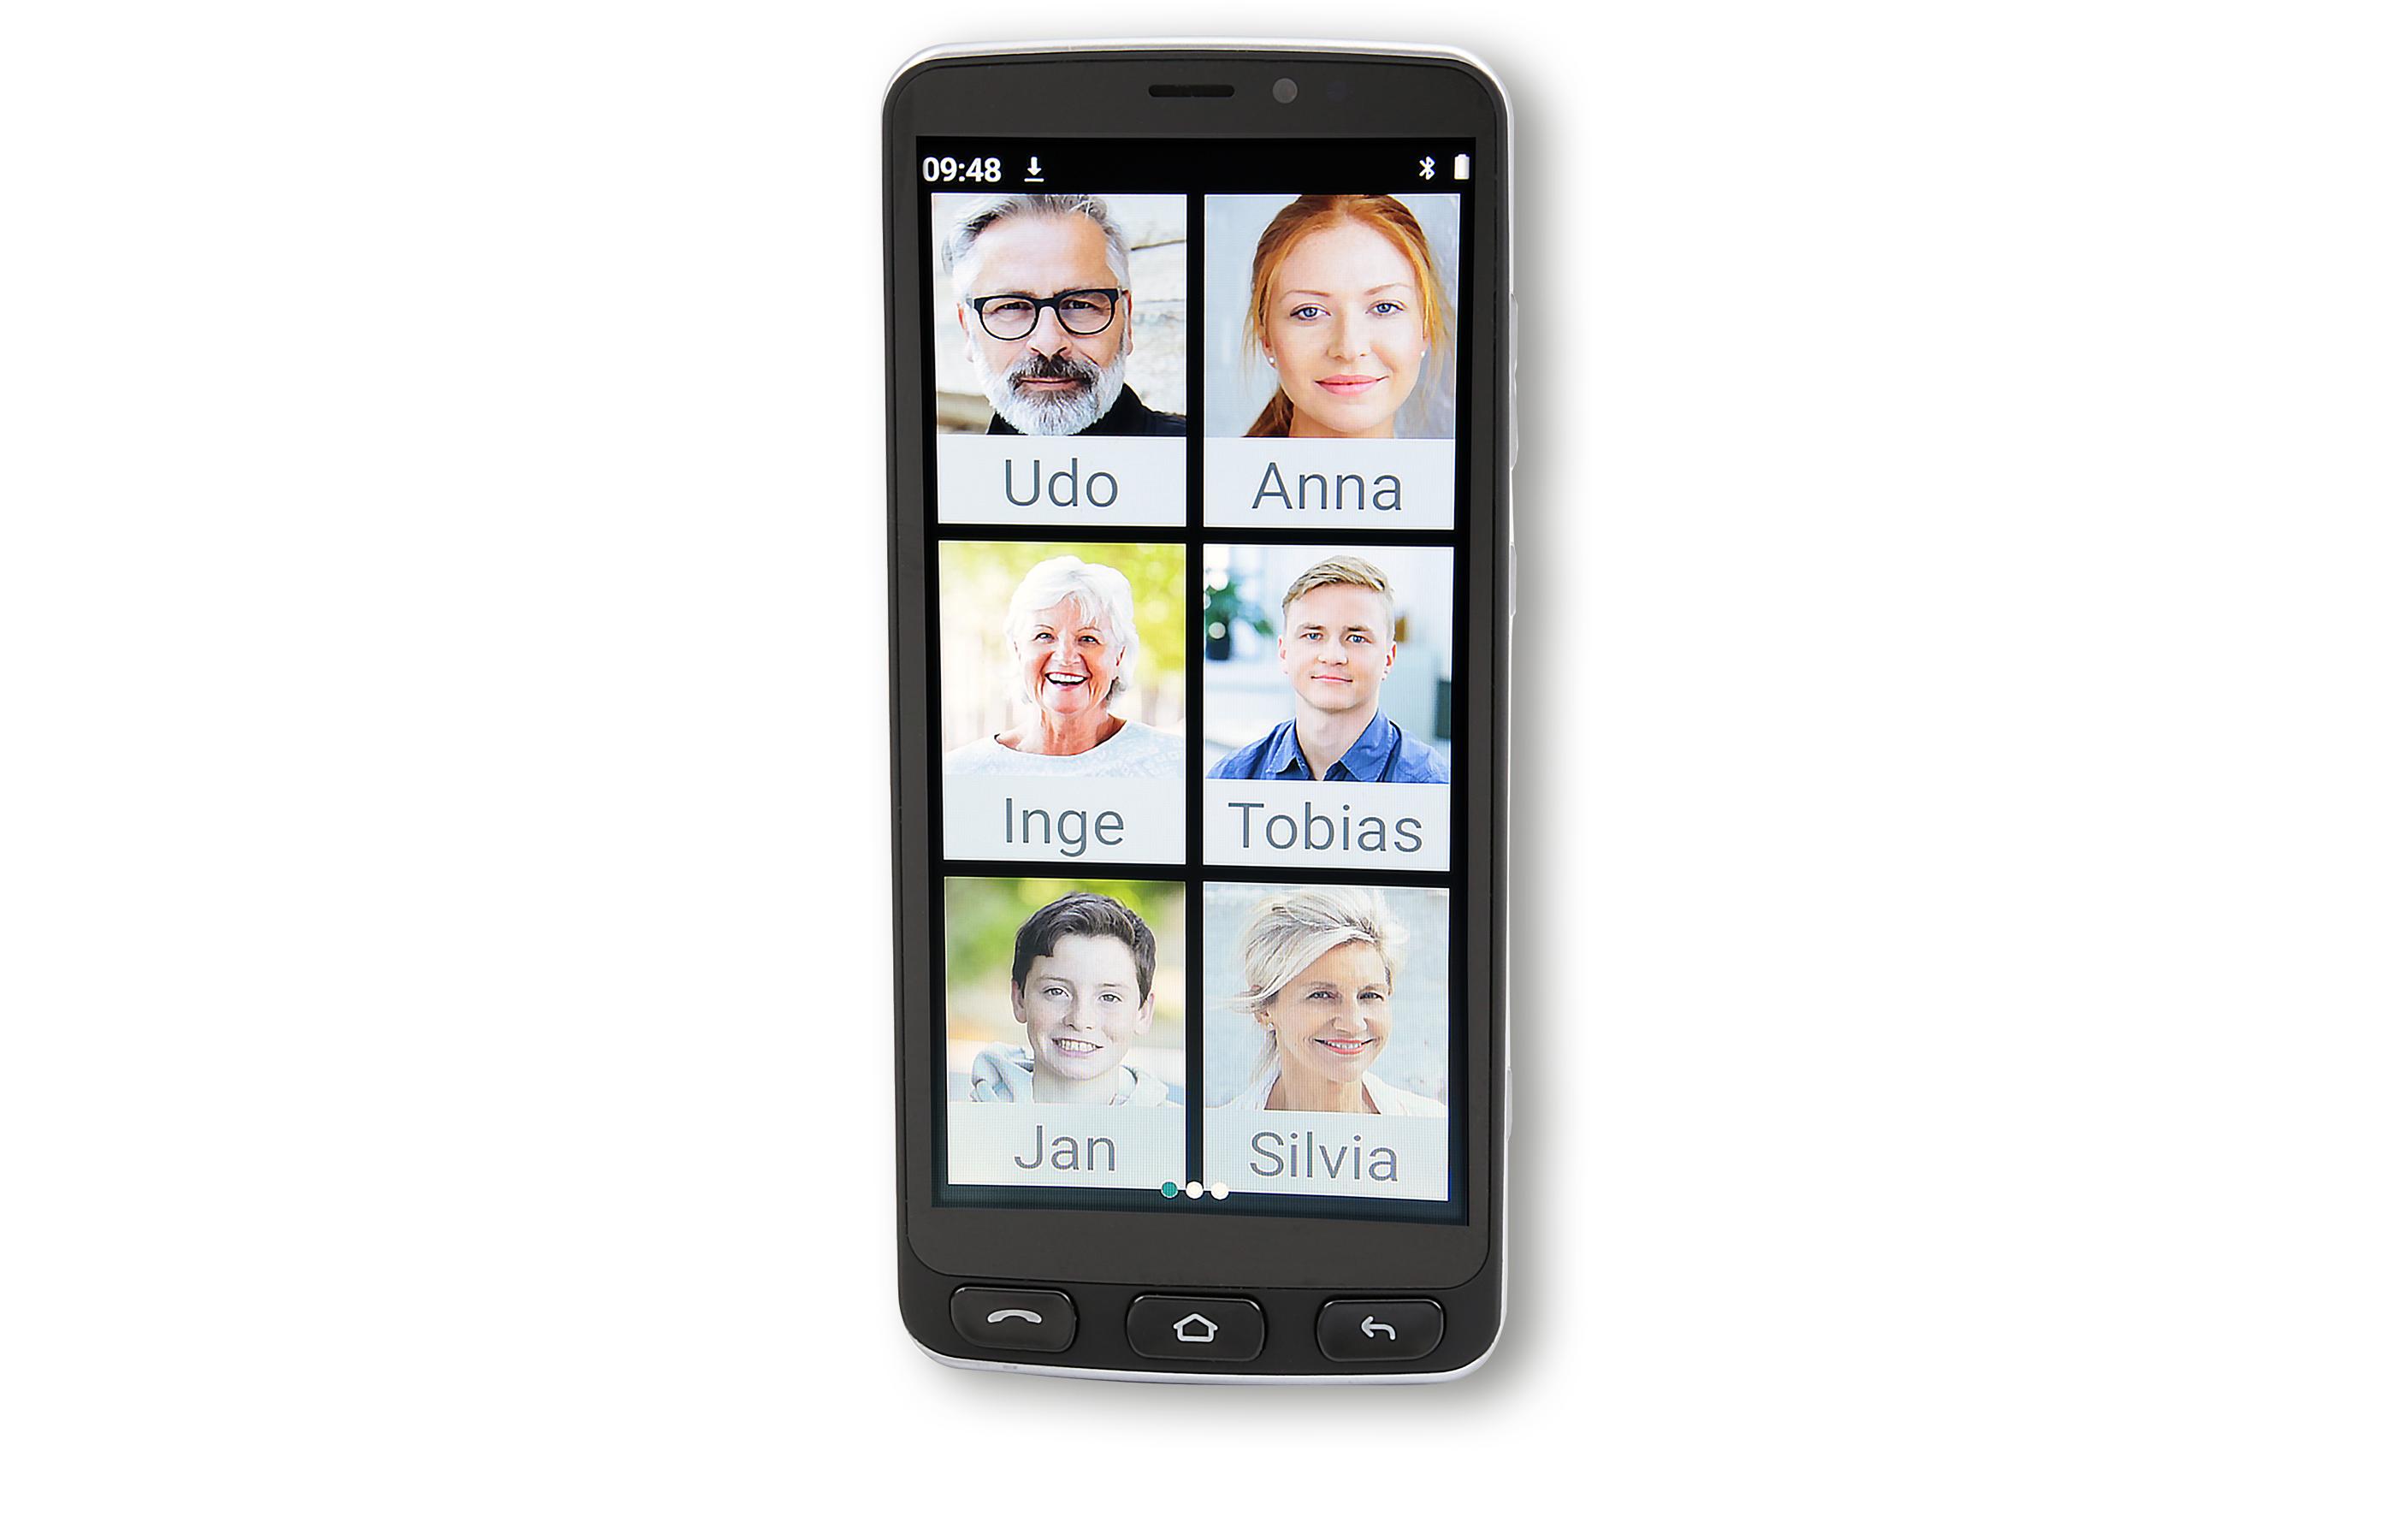 Olympia Smartphone »16 GB Schwarz«, schwarz, 13,97 cm/5,5 Zoll, 16 GB Speicherplatz, 8 MP Kamera